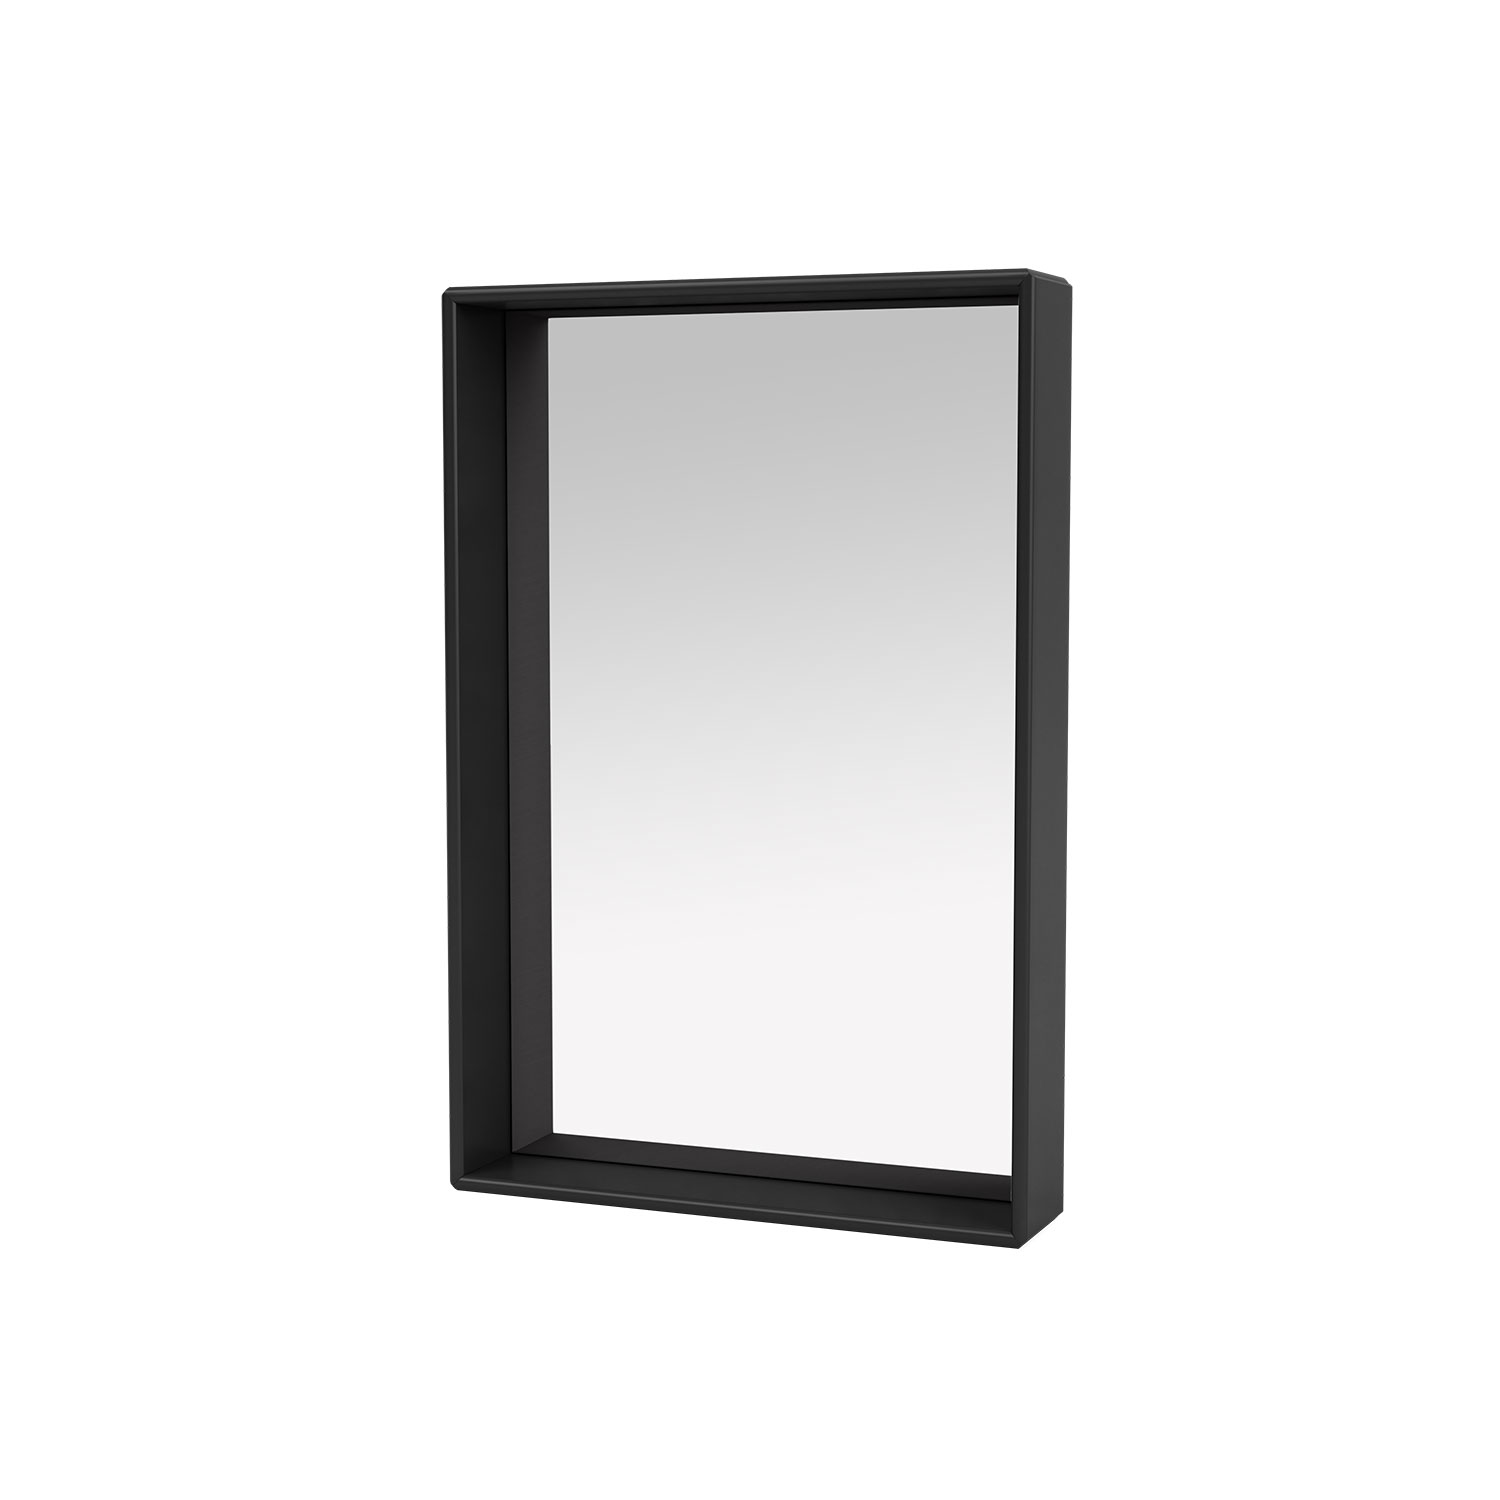 SHELFIE mirror with shelf, Black